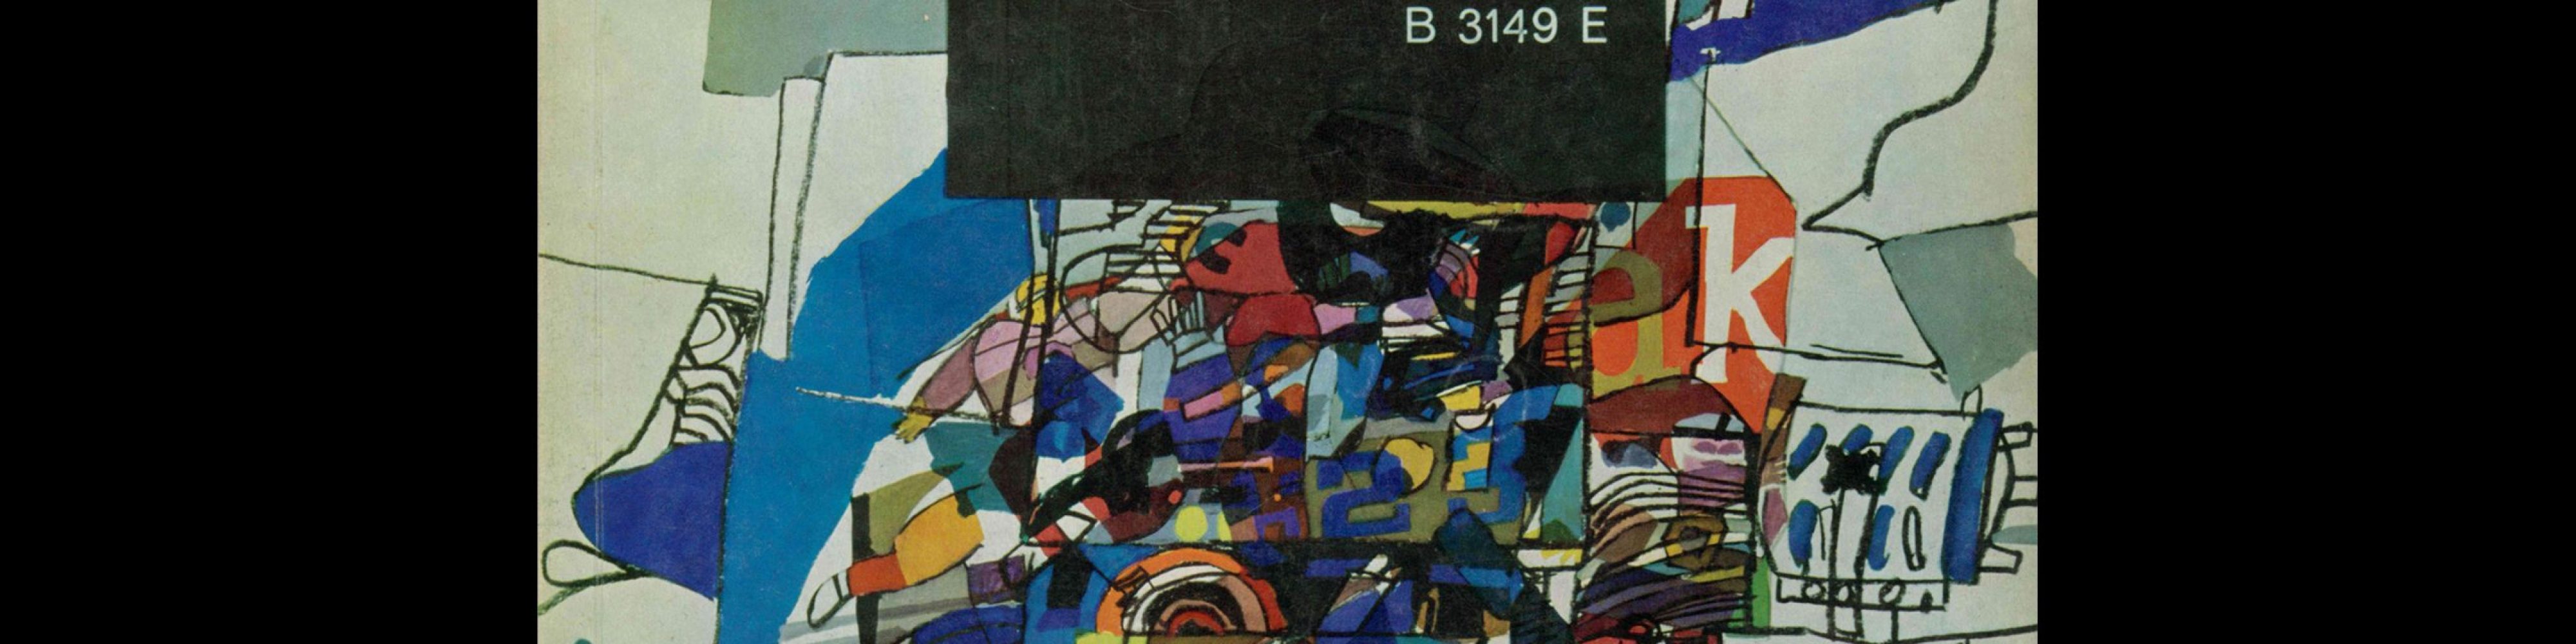 Gebrauchsgraphik, 10, 1965. Cover design by Klaus Warwas